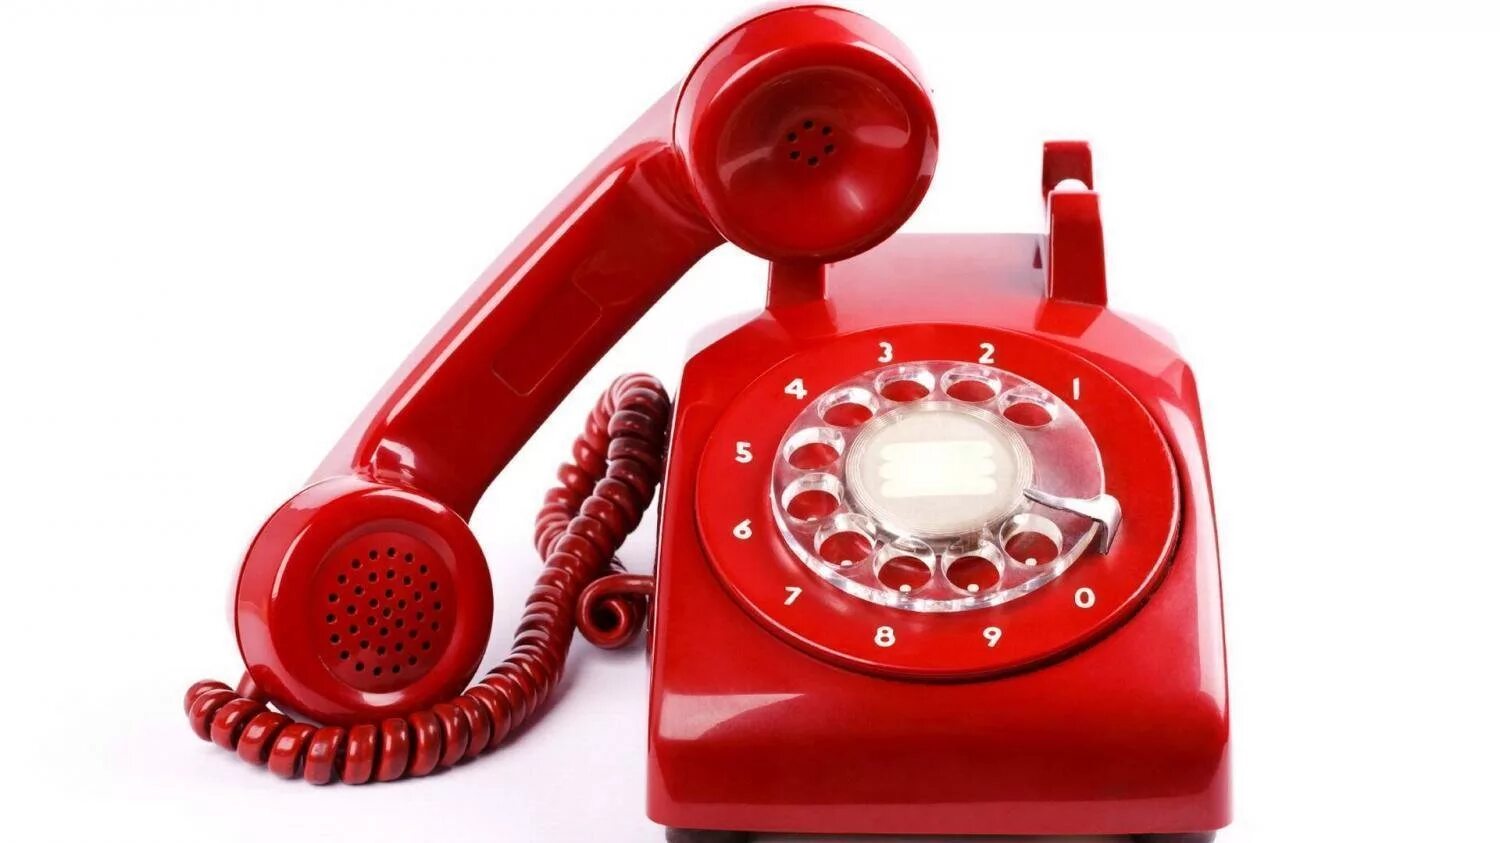 Горячая линия. Красный телефон. Телефонная трубка. Красный телефонный аппарат.